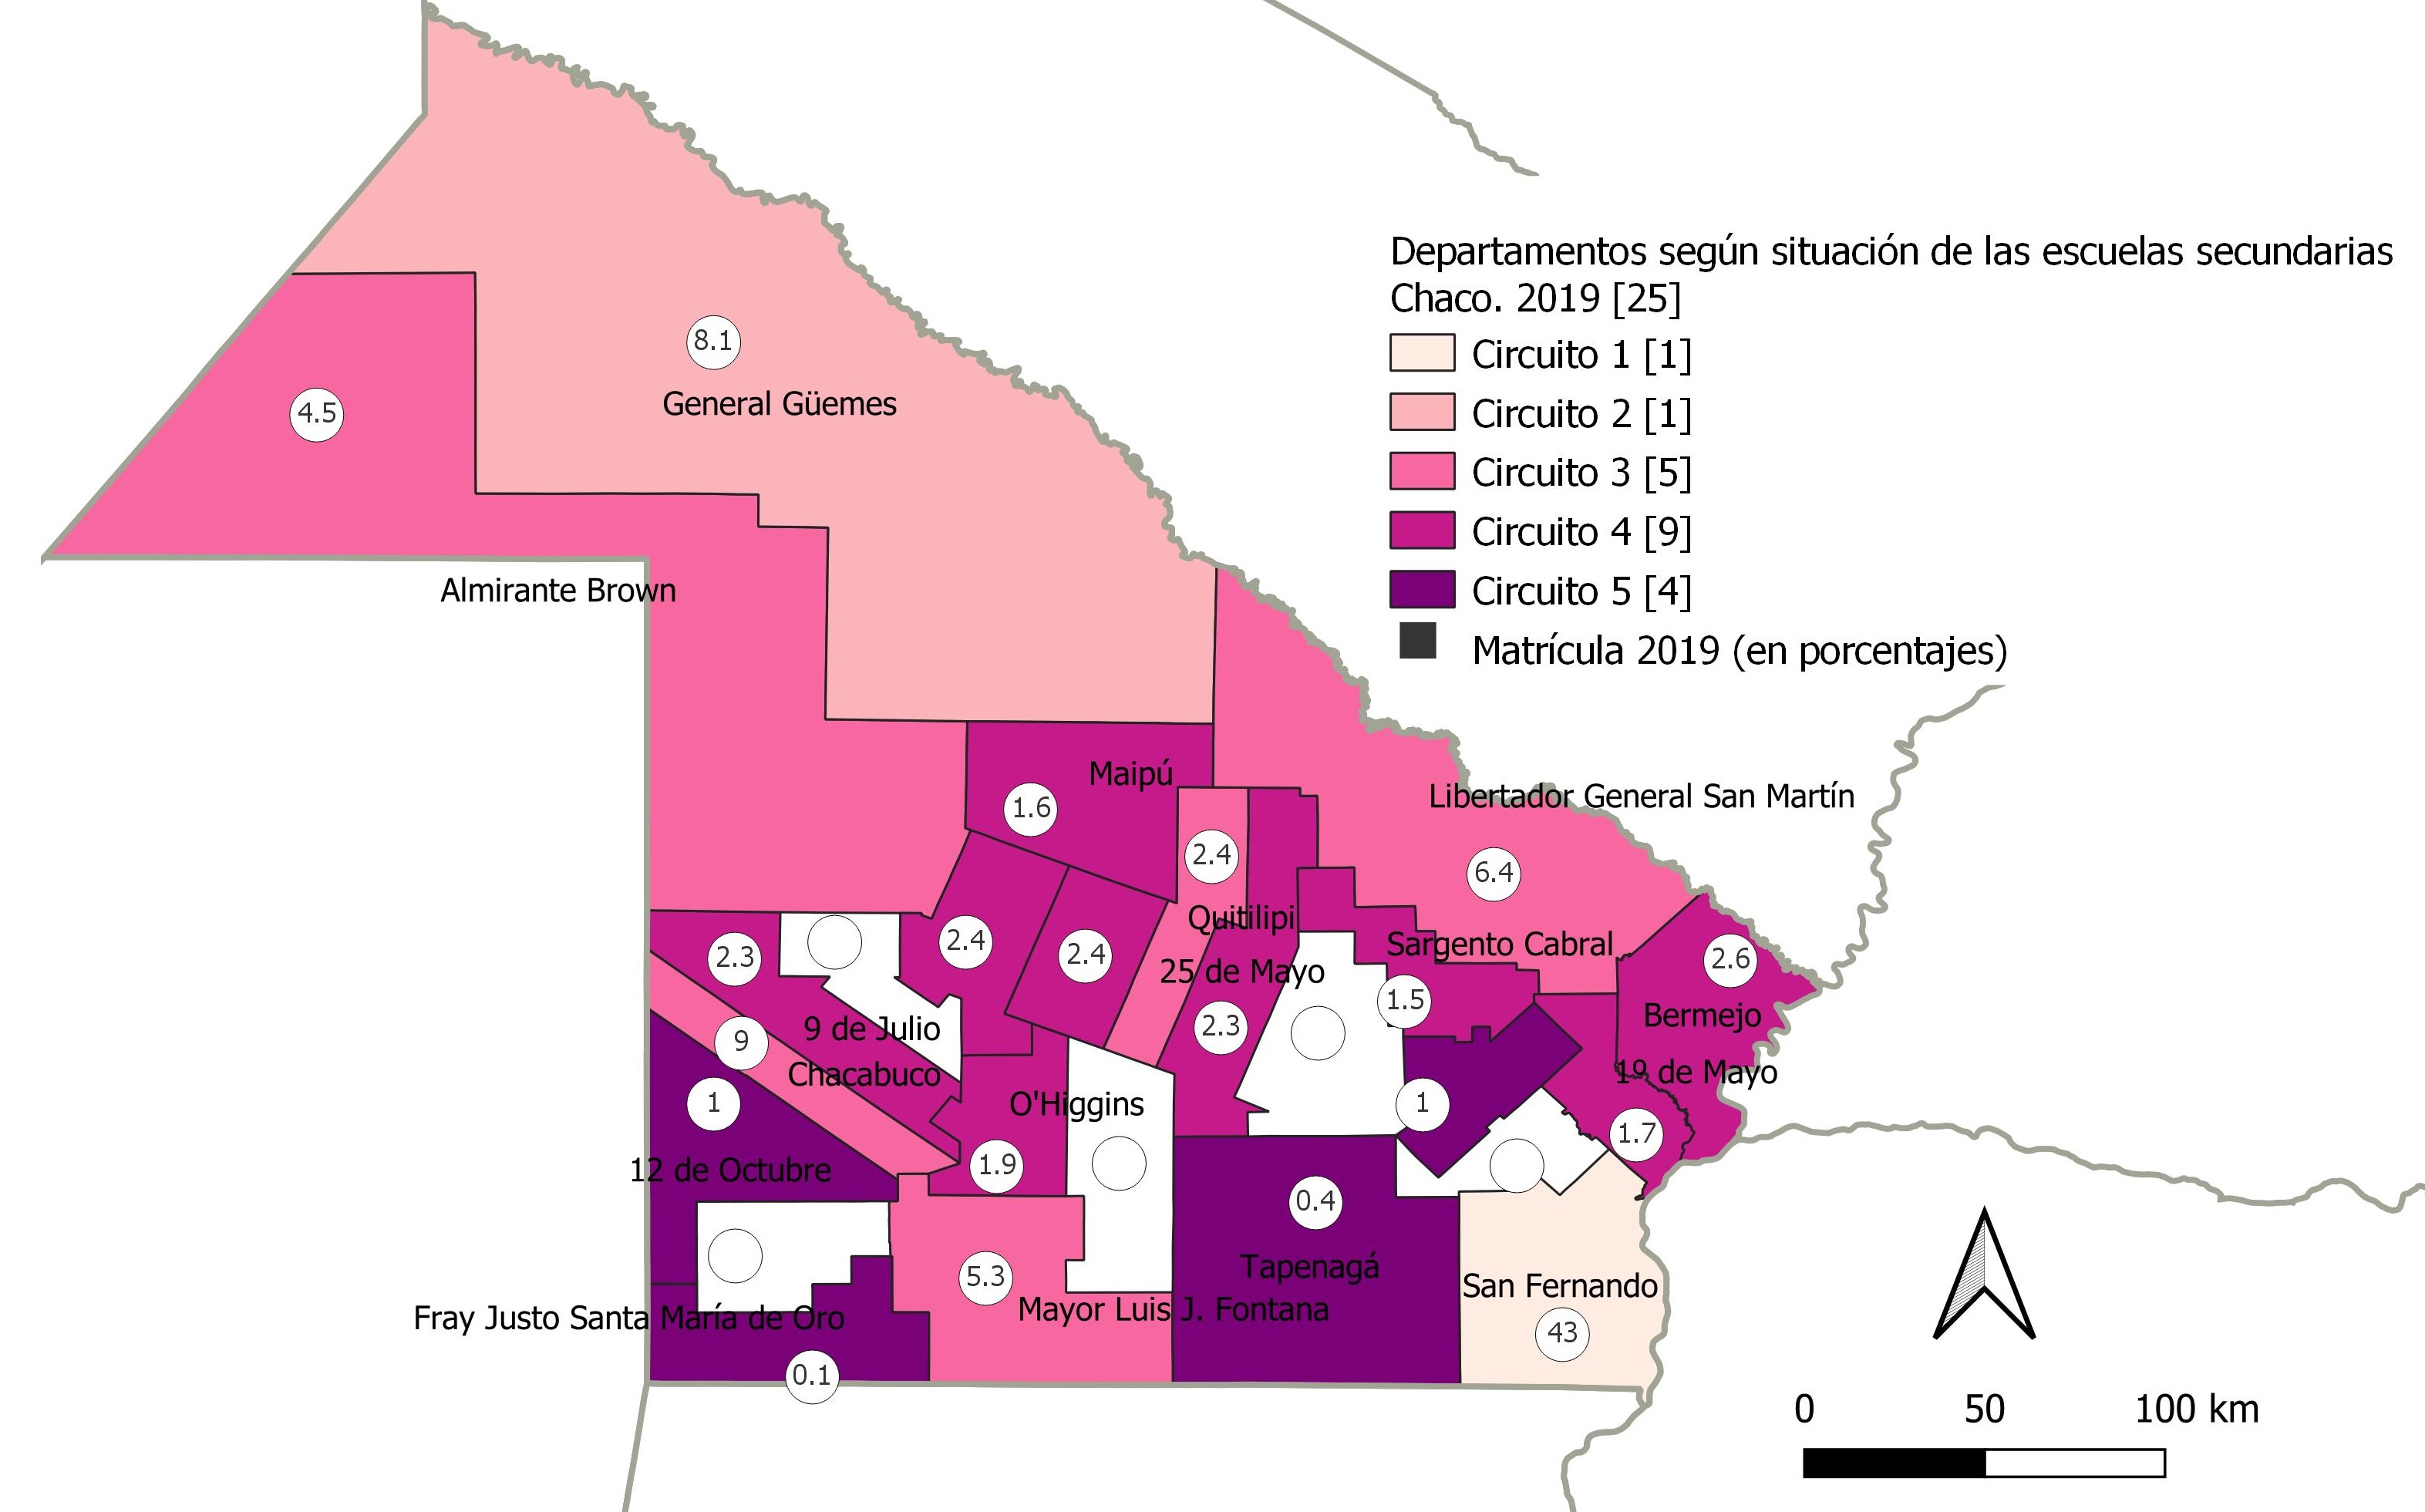 Provincia de Chaco.
Departamentos según grupos de escuelas de educación secundaria y matrícula,
2019 (en porcentajes).